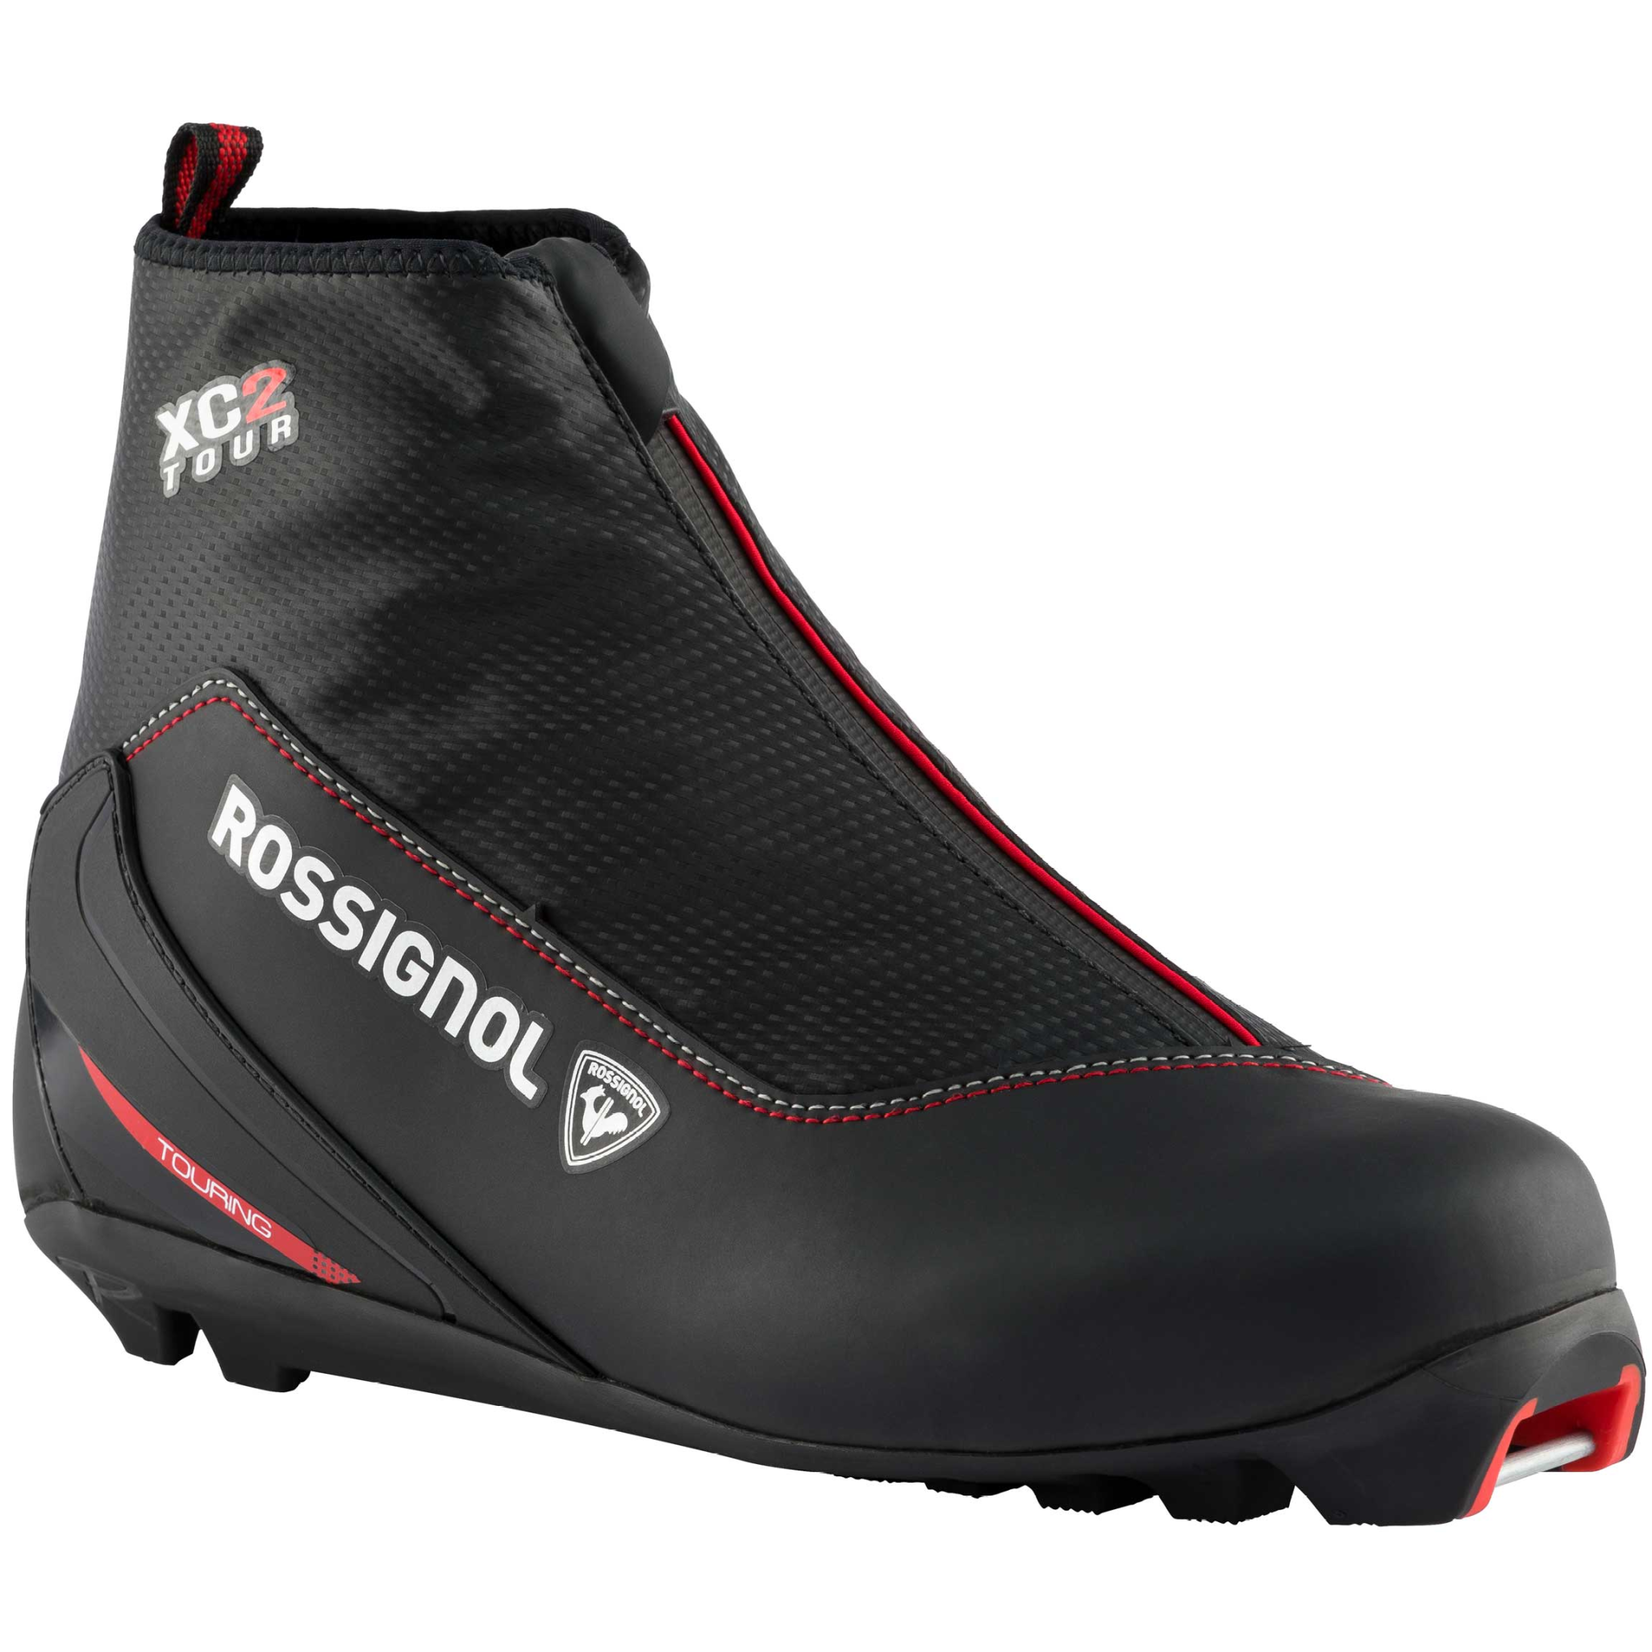 Rossignol Rossignol XC-2 - Nordic Ski Boots